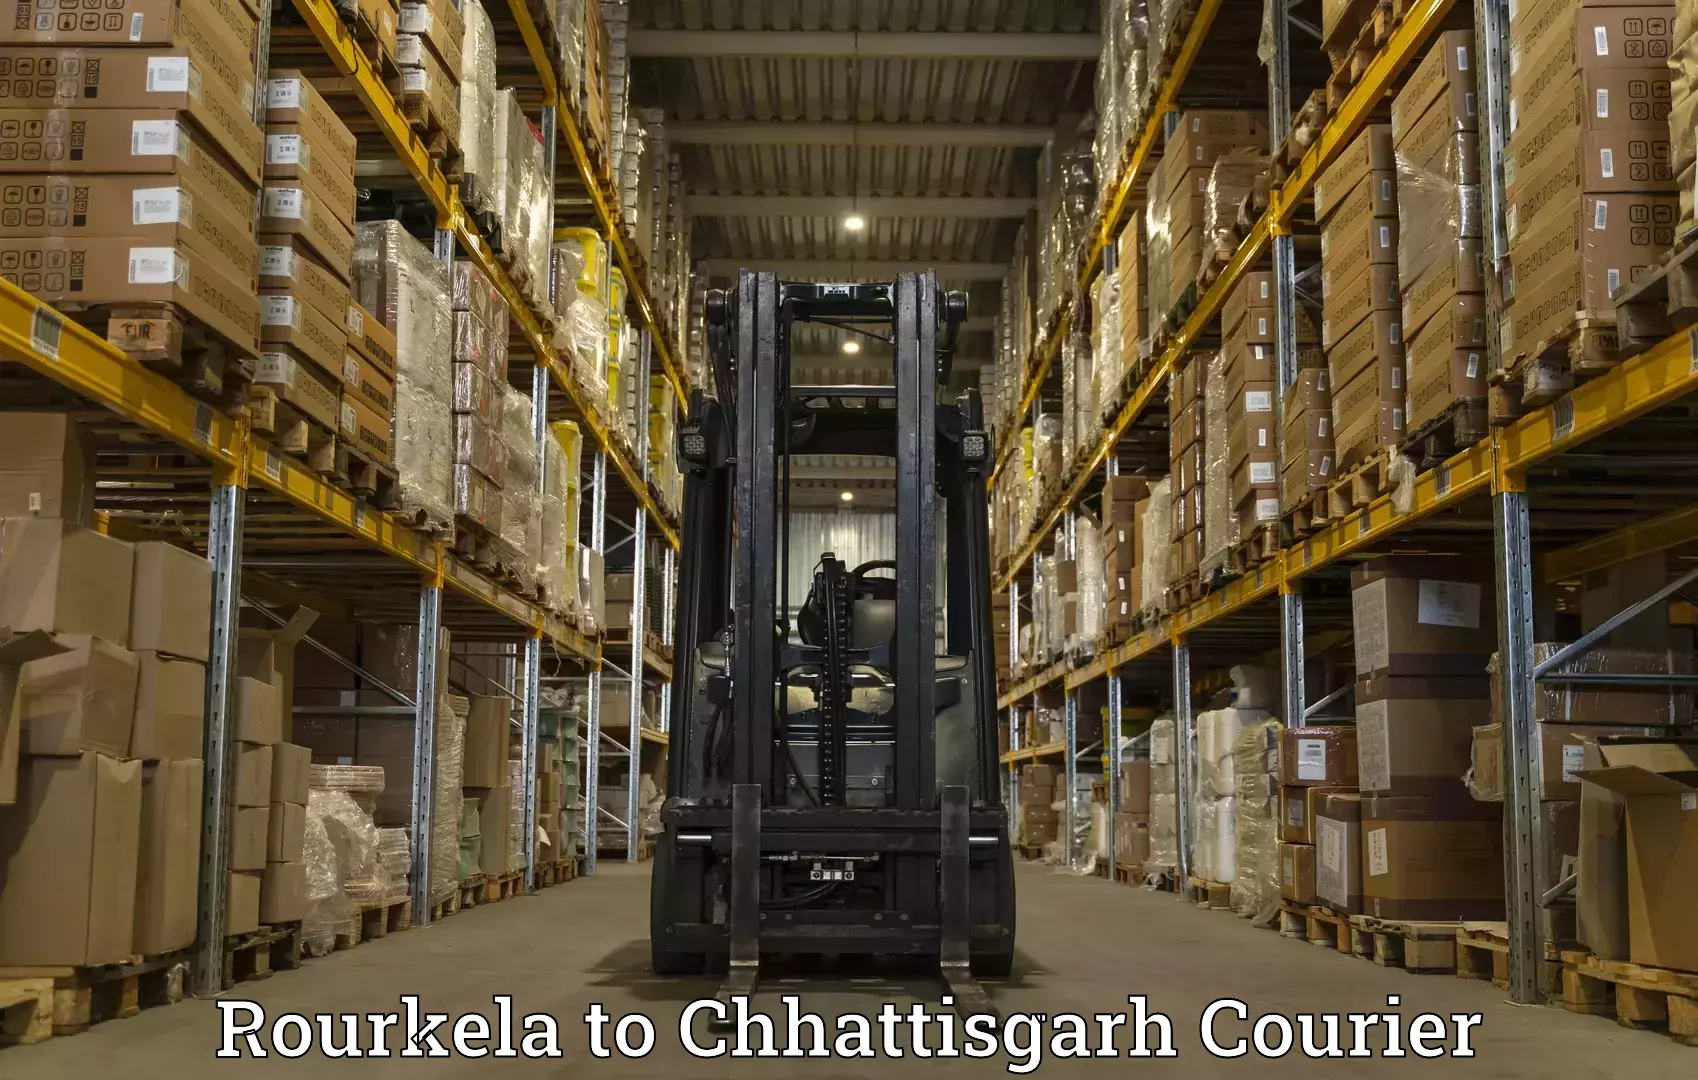 Urban courier service Rourkela to Chhattisgarh